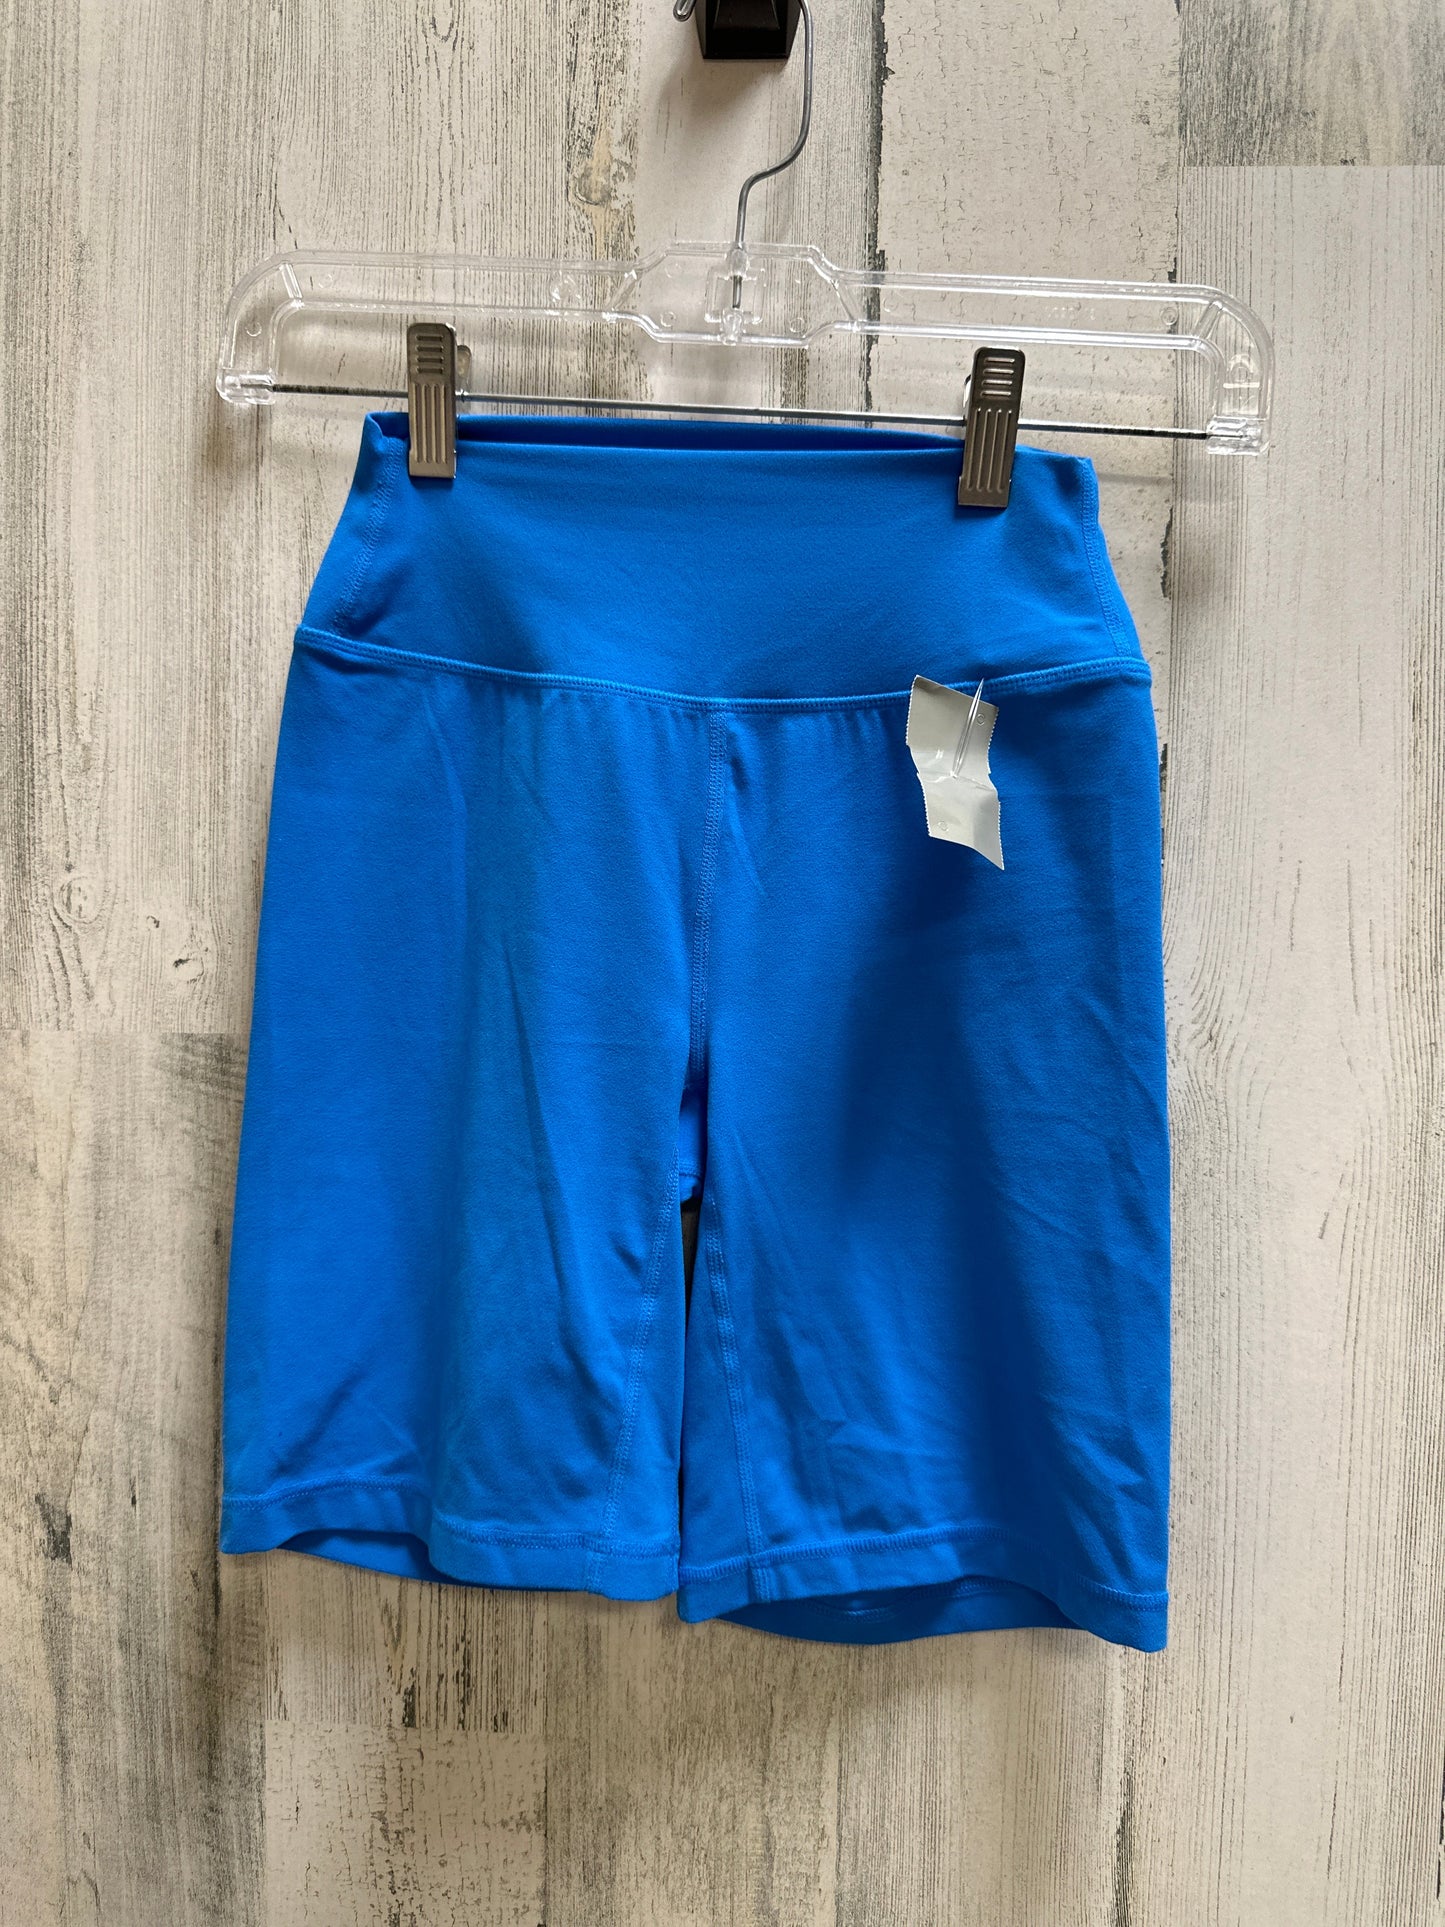 Blue Athletic Shorts Storia, Size 2